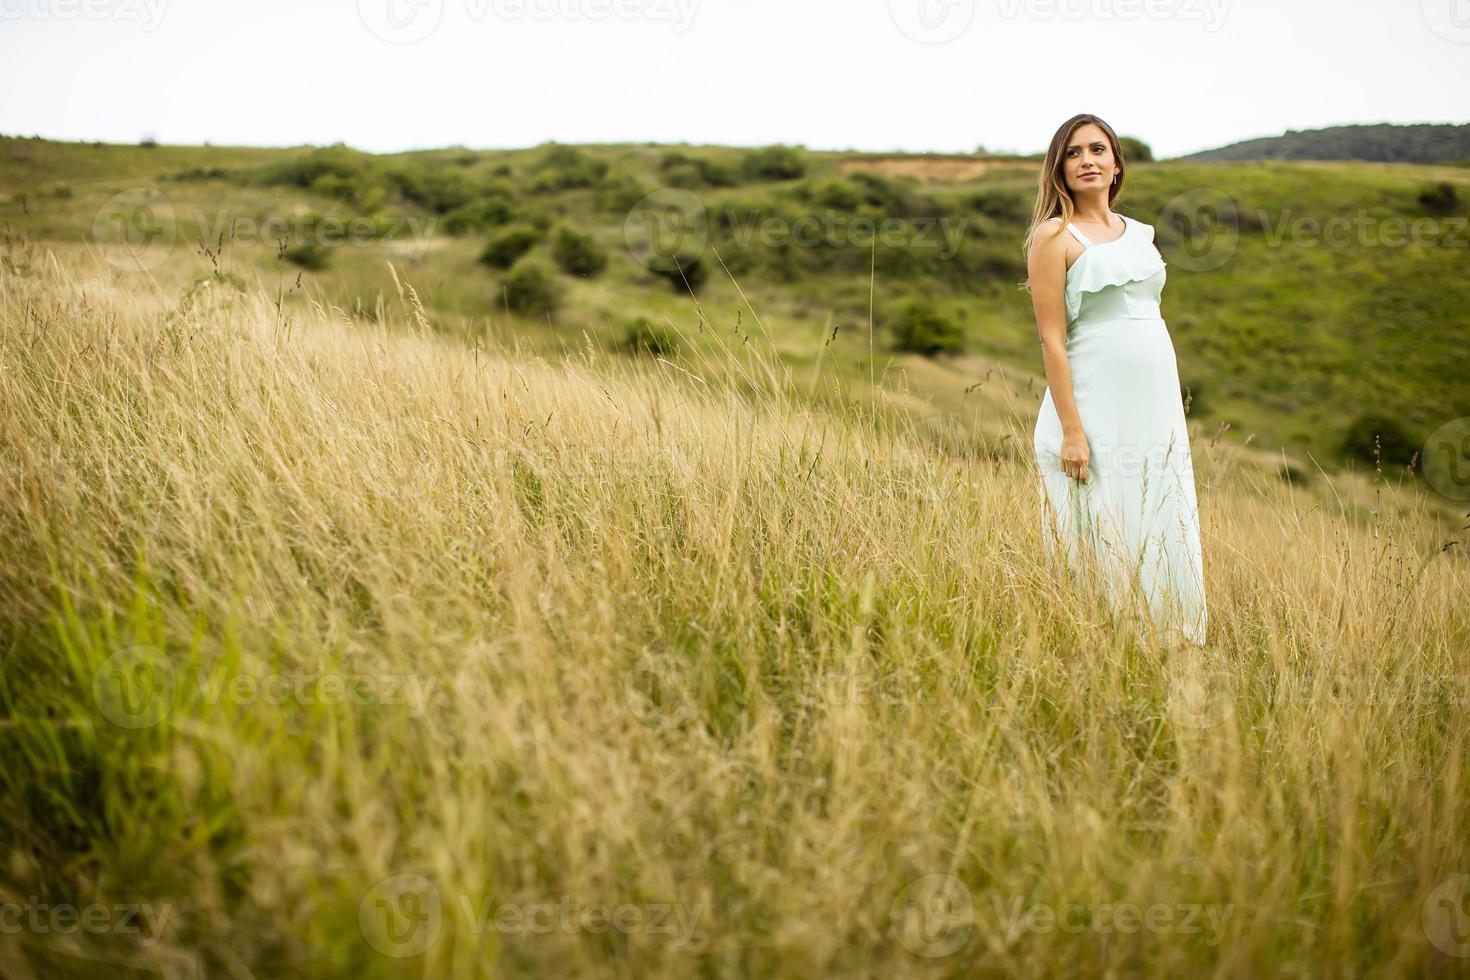 giovane donna incinta rilassante fuori nella natura foto